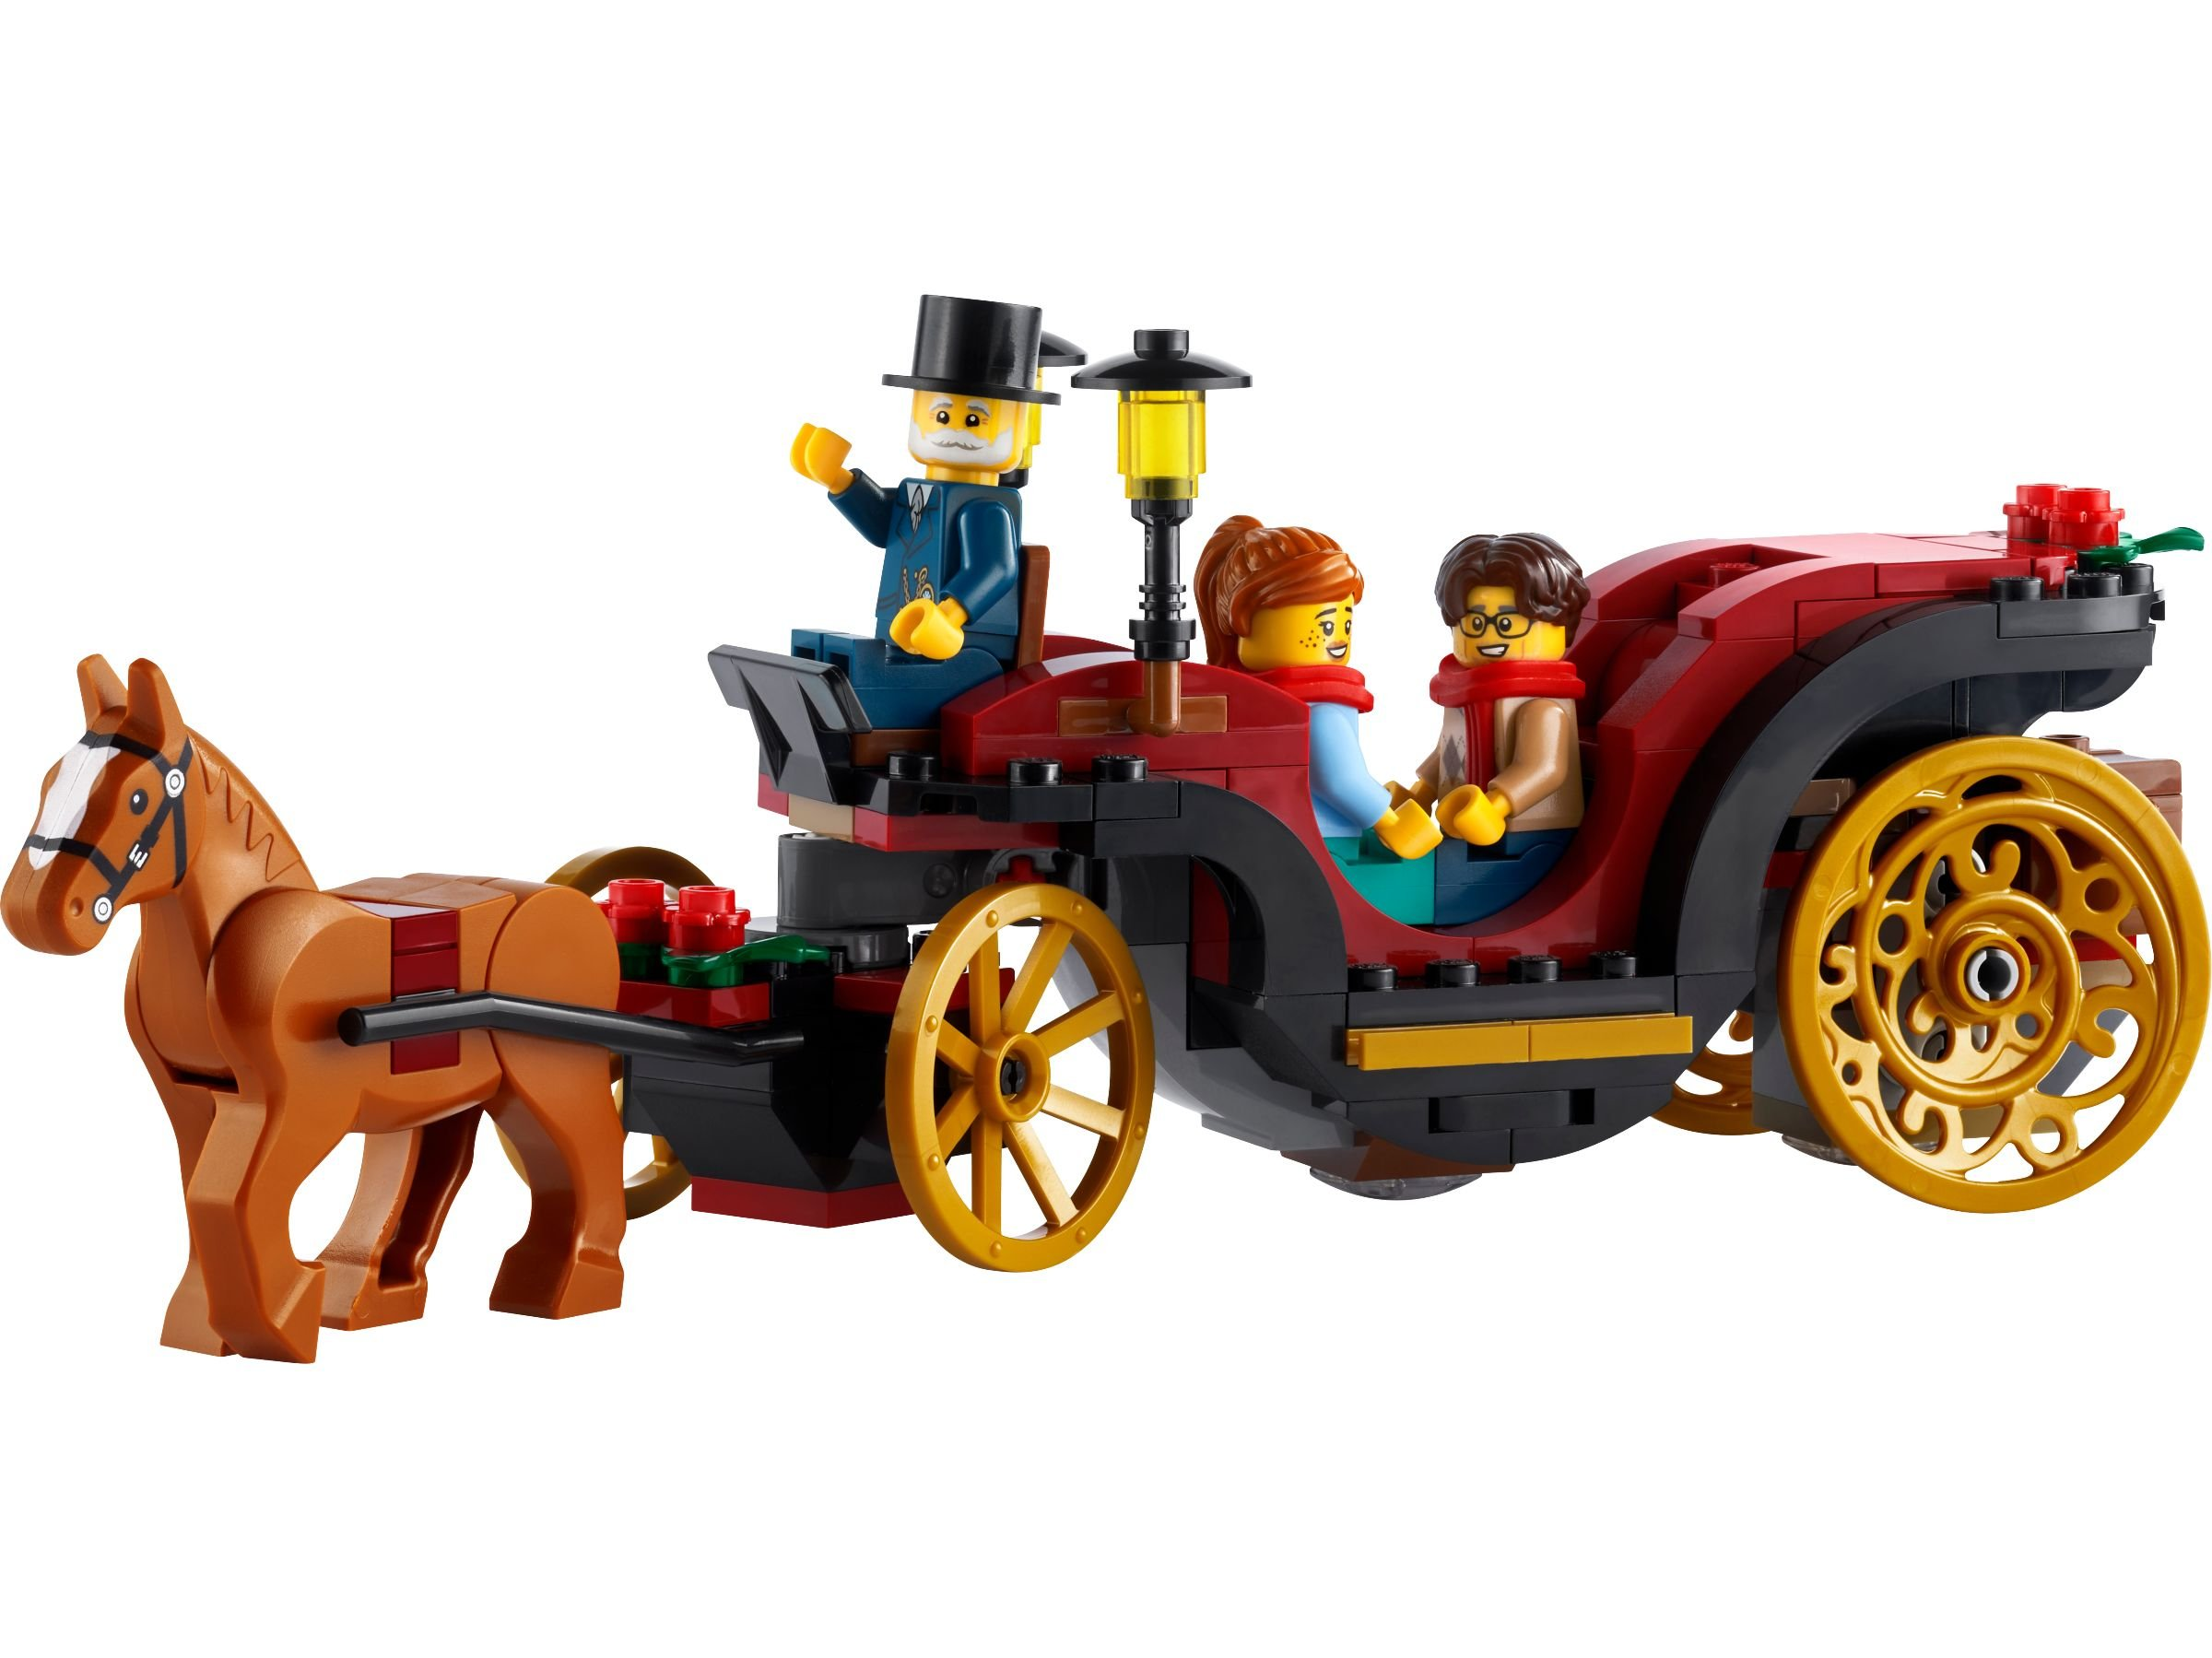 LEGO 40603 Weihnachtskutsche Bausatz